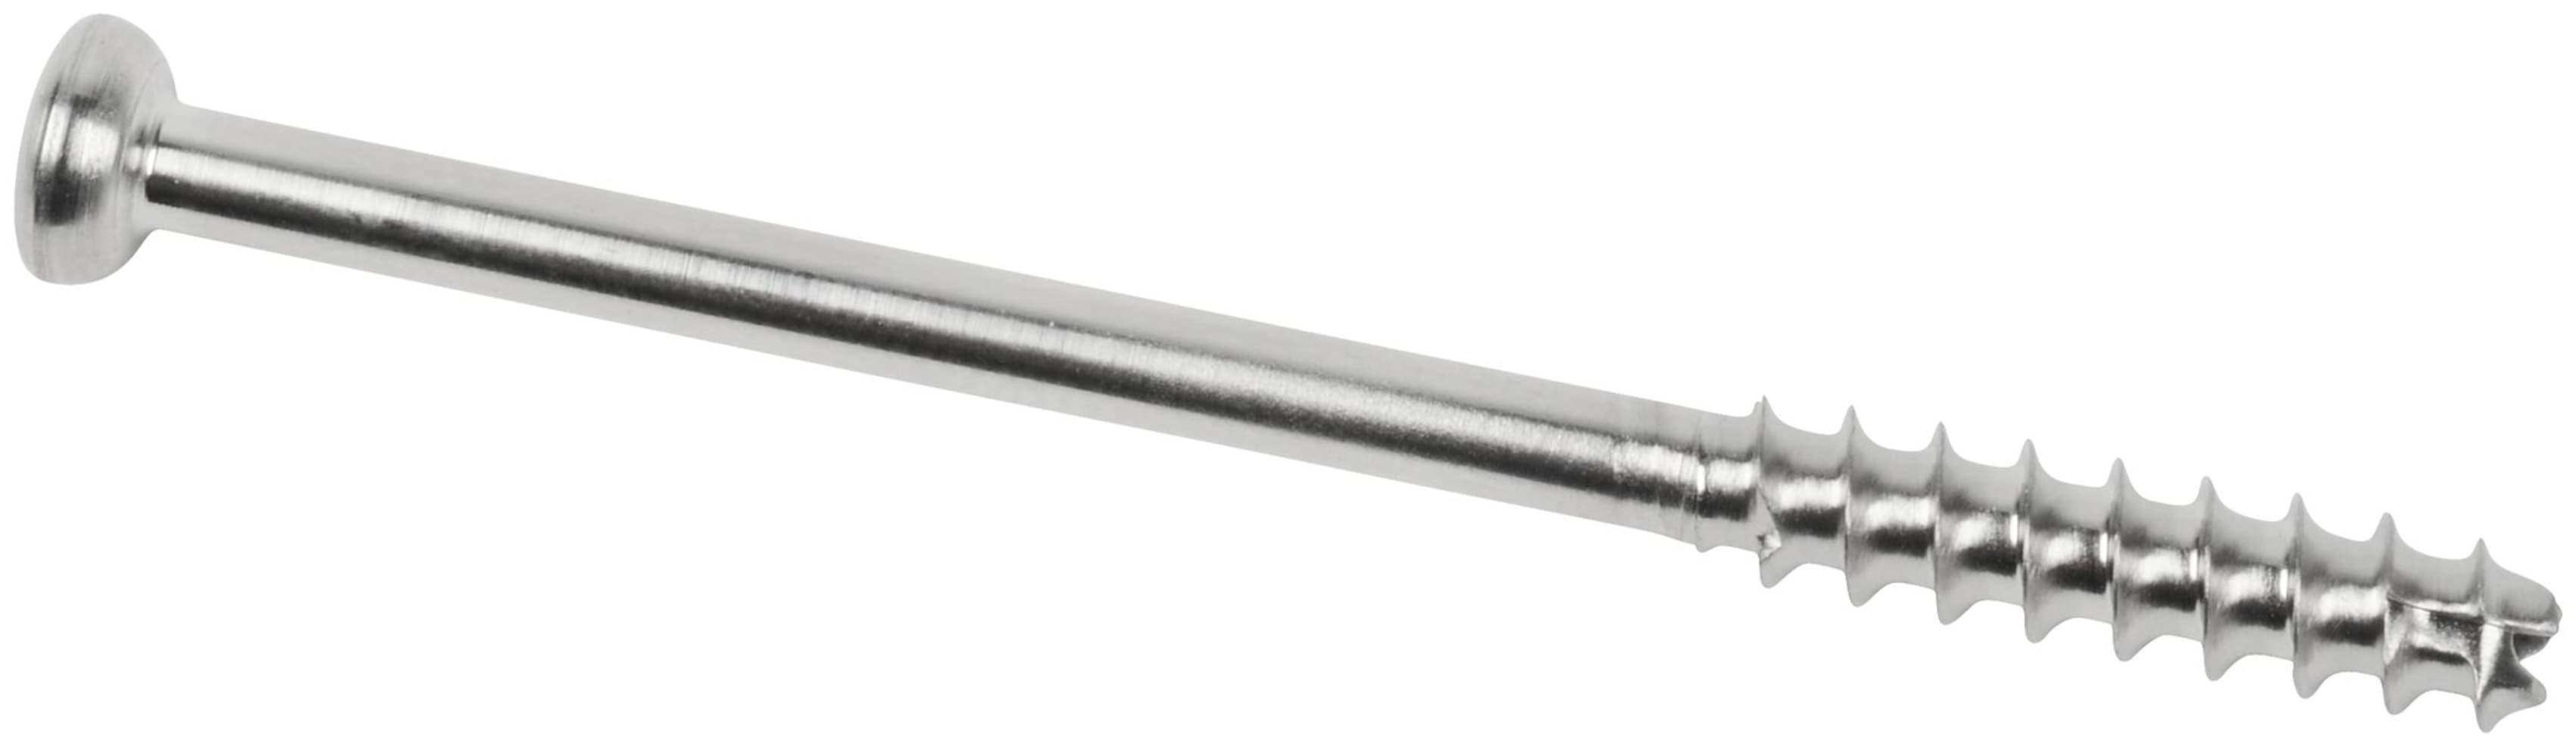 Low Profil Schraube, Stahl, kanüliert, kurzes Gewinde, 4.0 x 50 mm, unsteril, IM